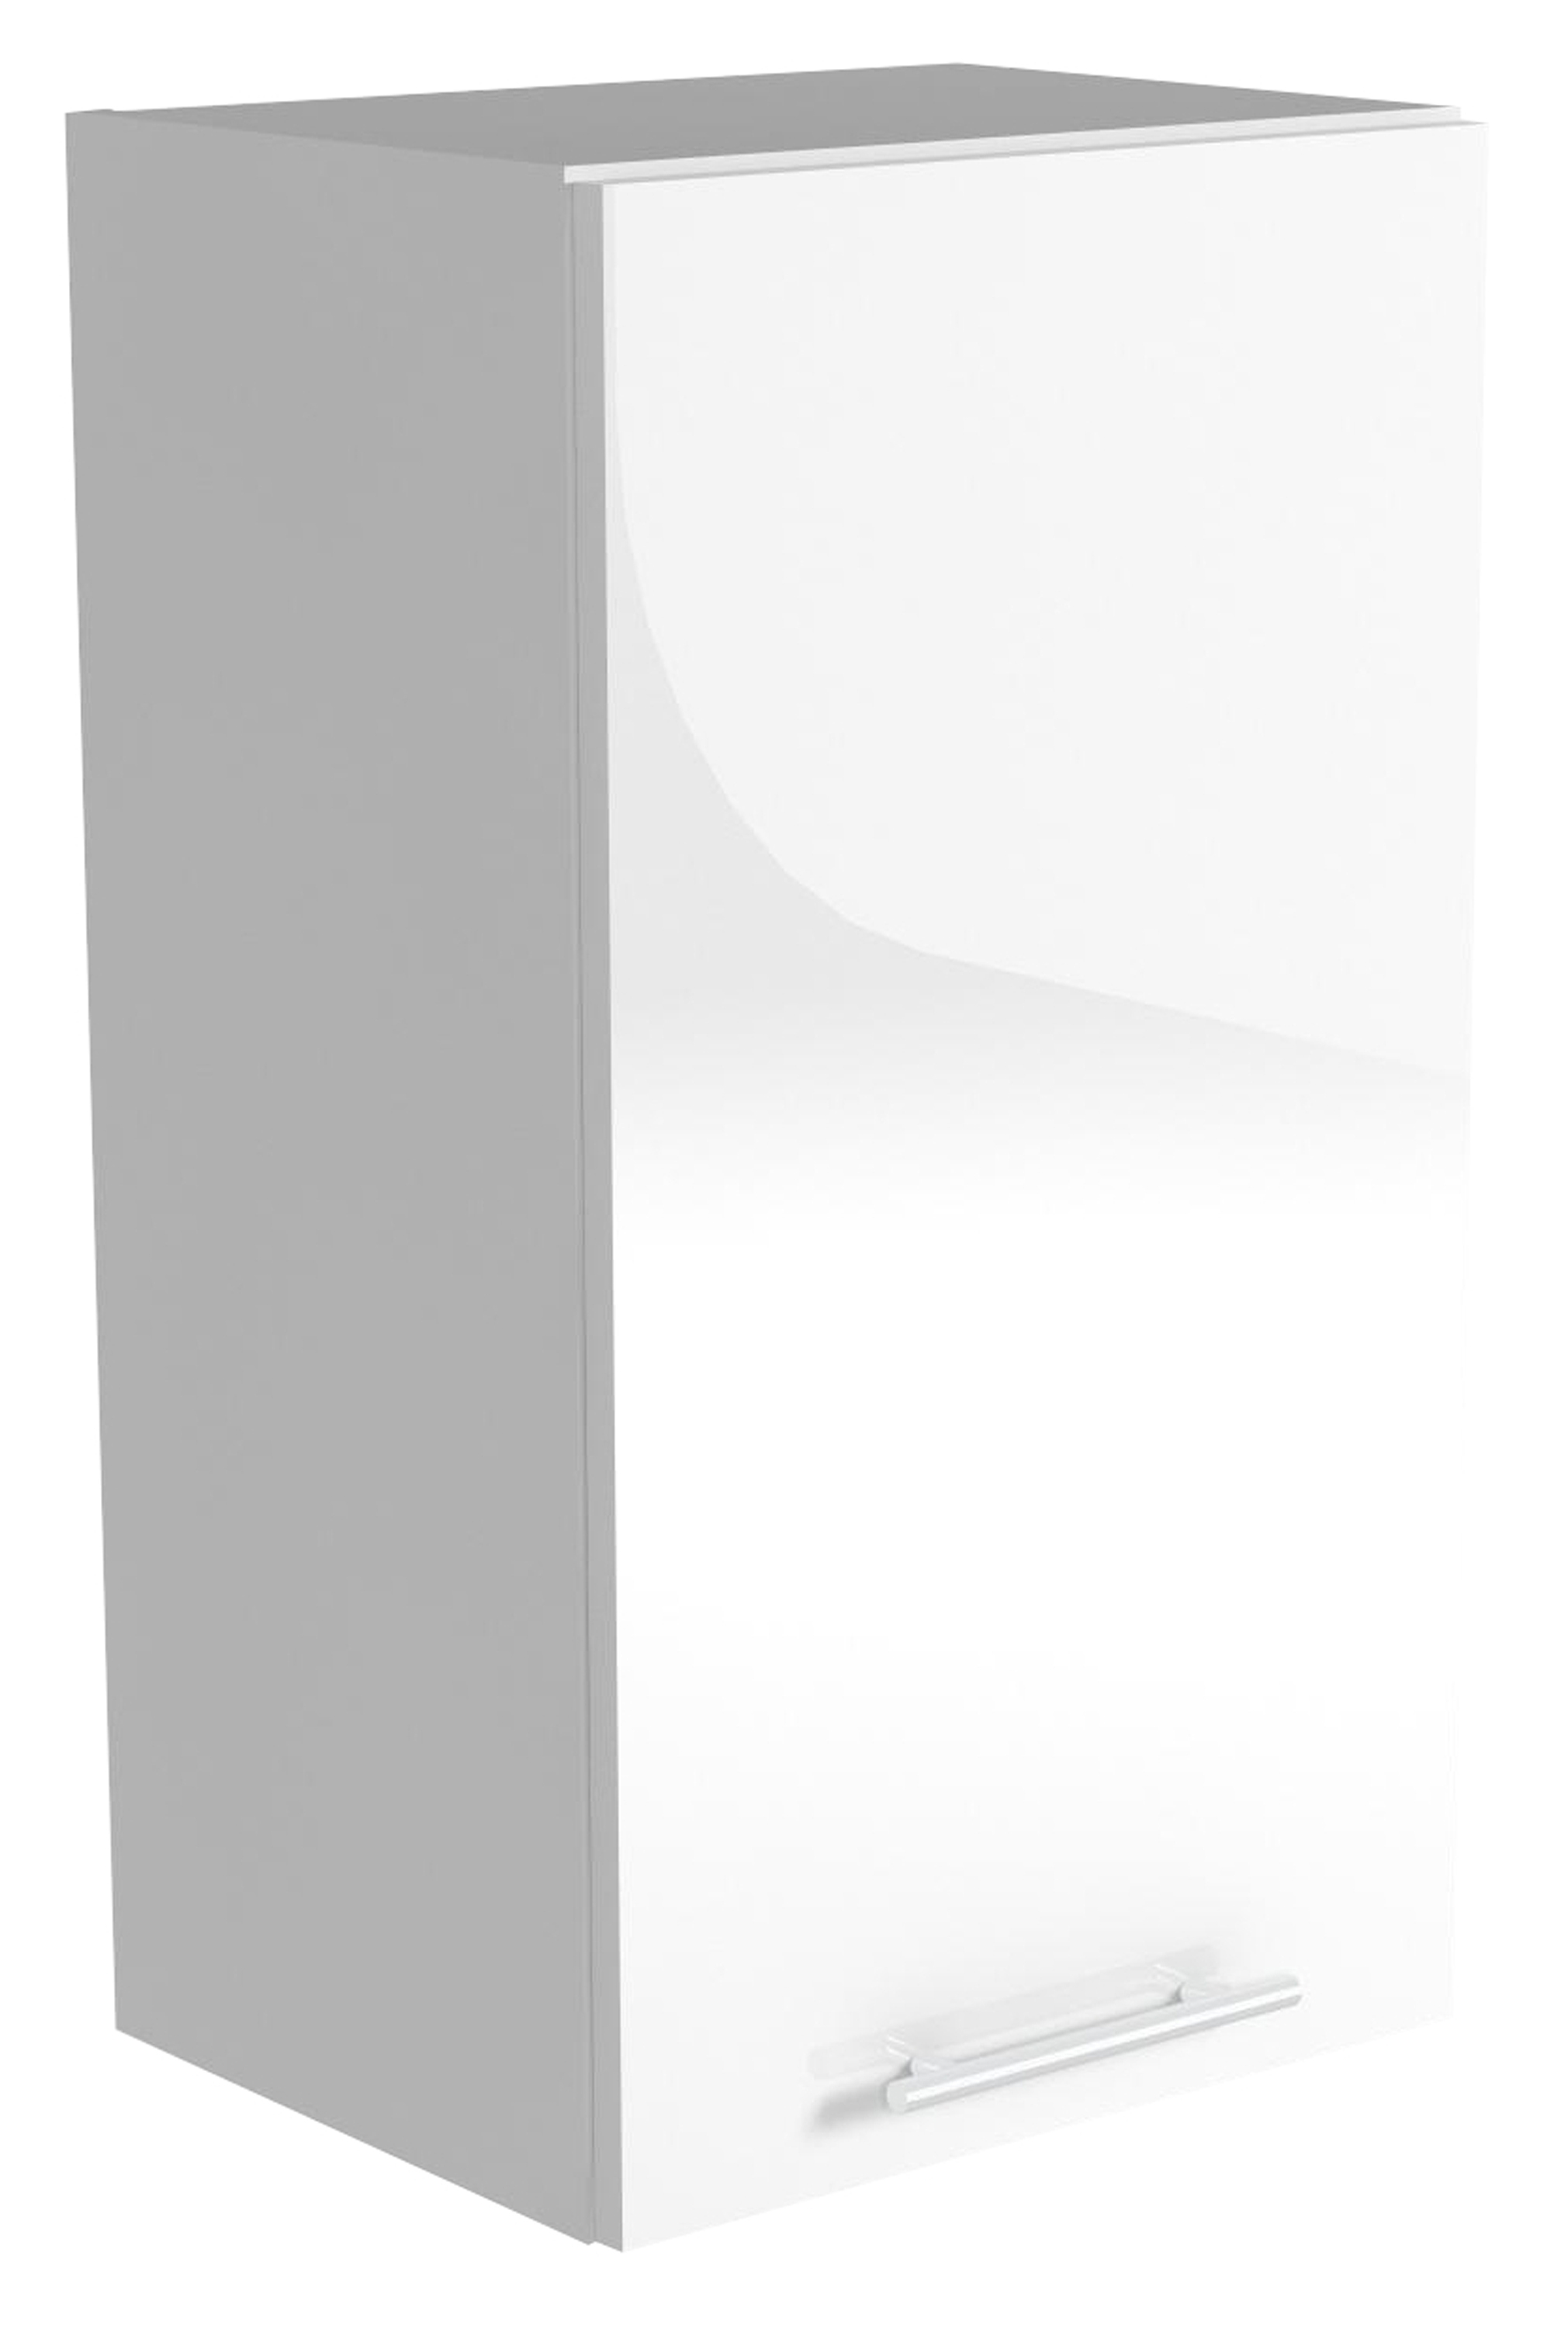 VENTO G-40/72 szafka górna front: biały (1p=1szt)